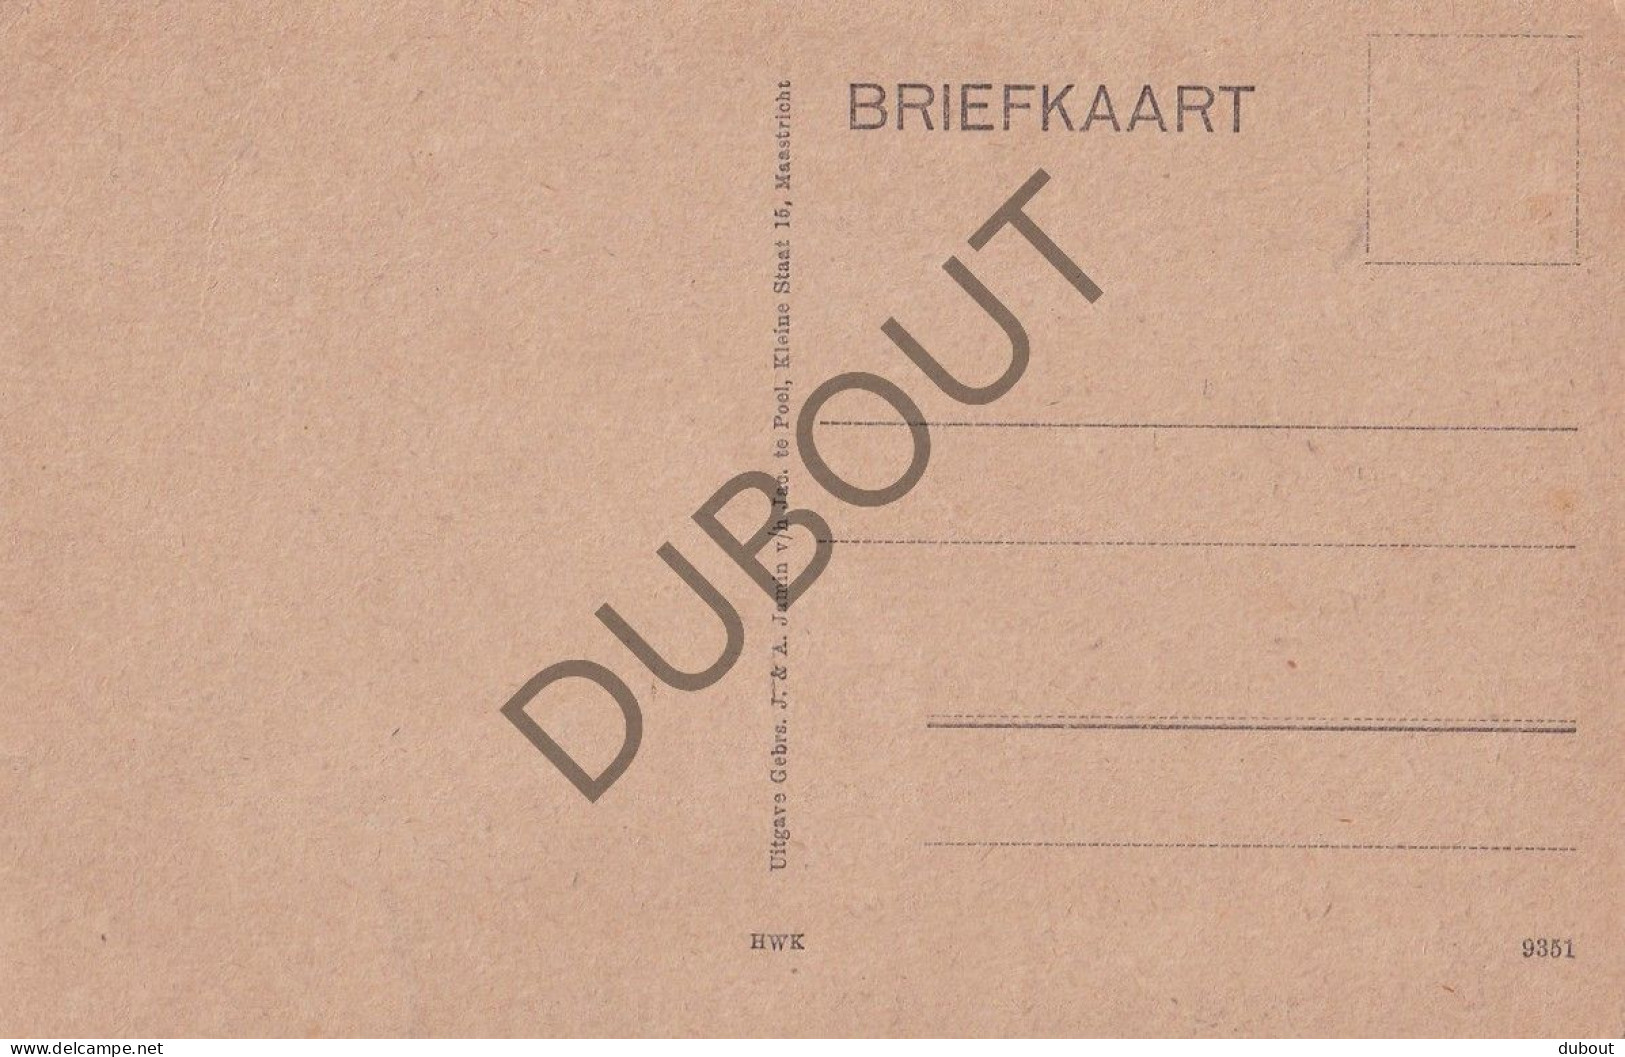 Postkaart - Carte Postale - Maastricht - Zwanengracht  (C5876) - Maastricht